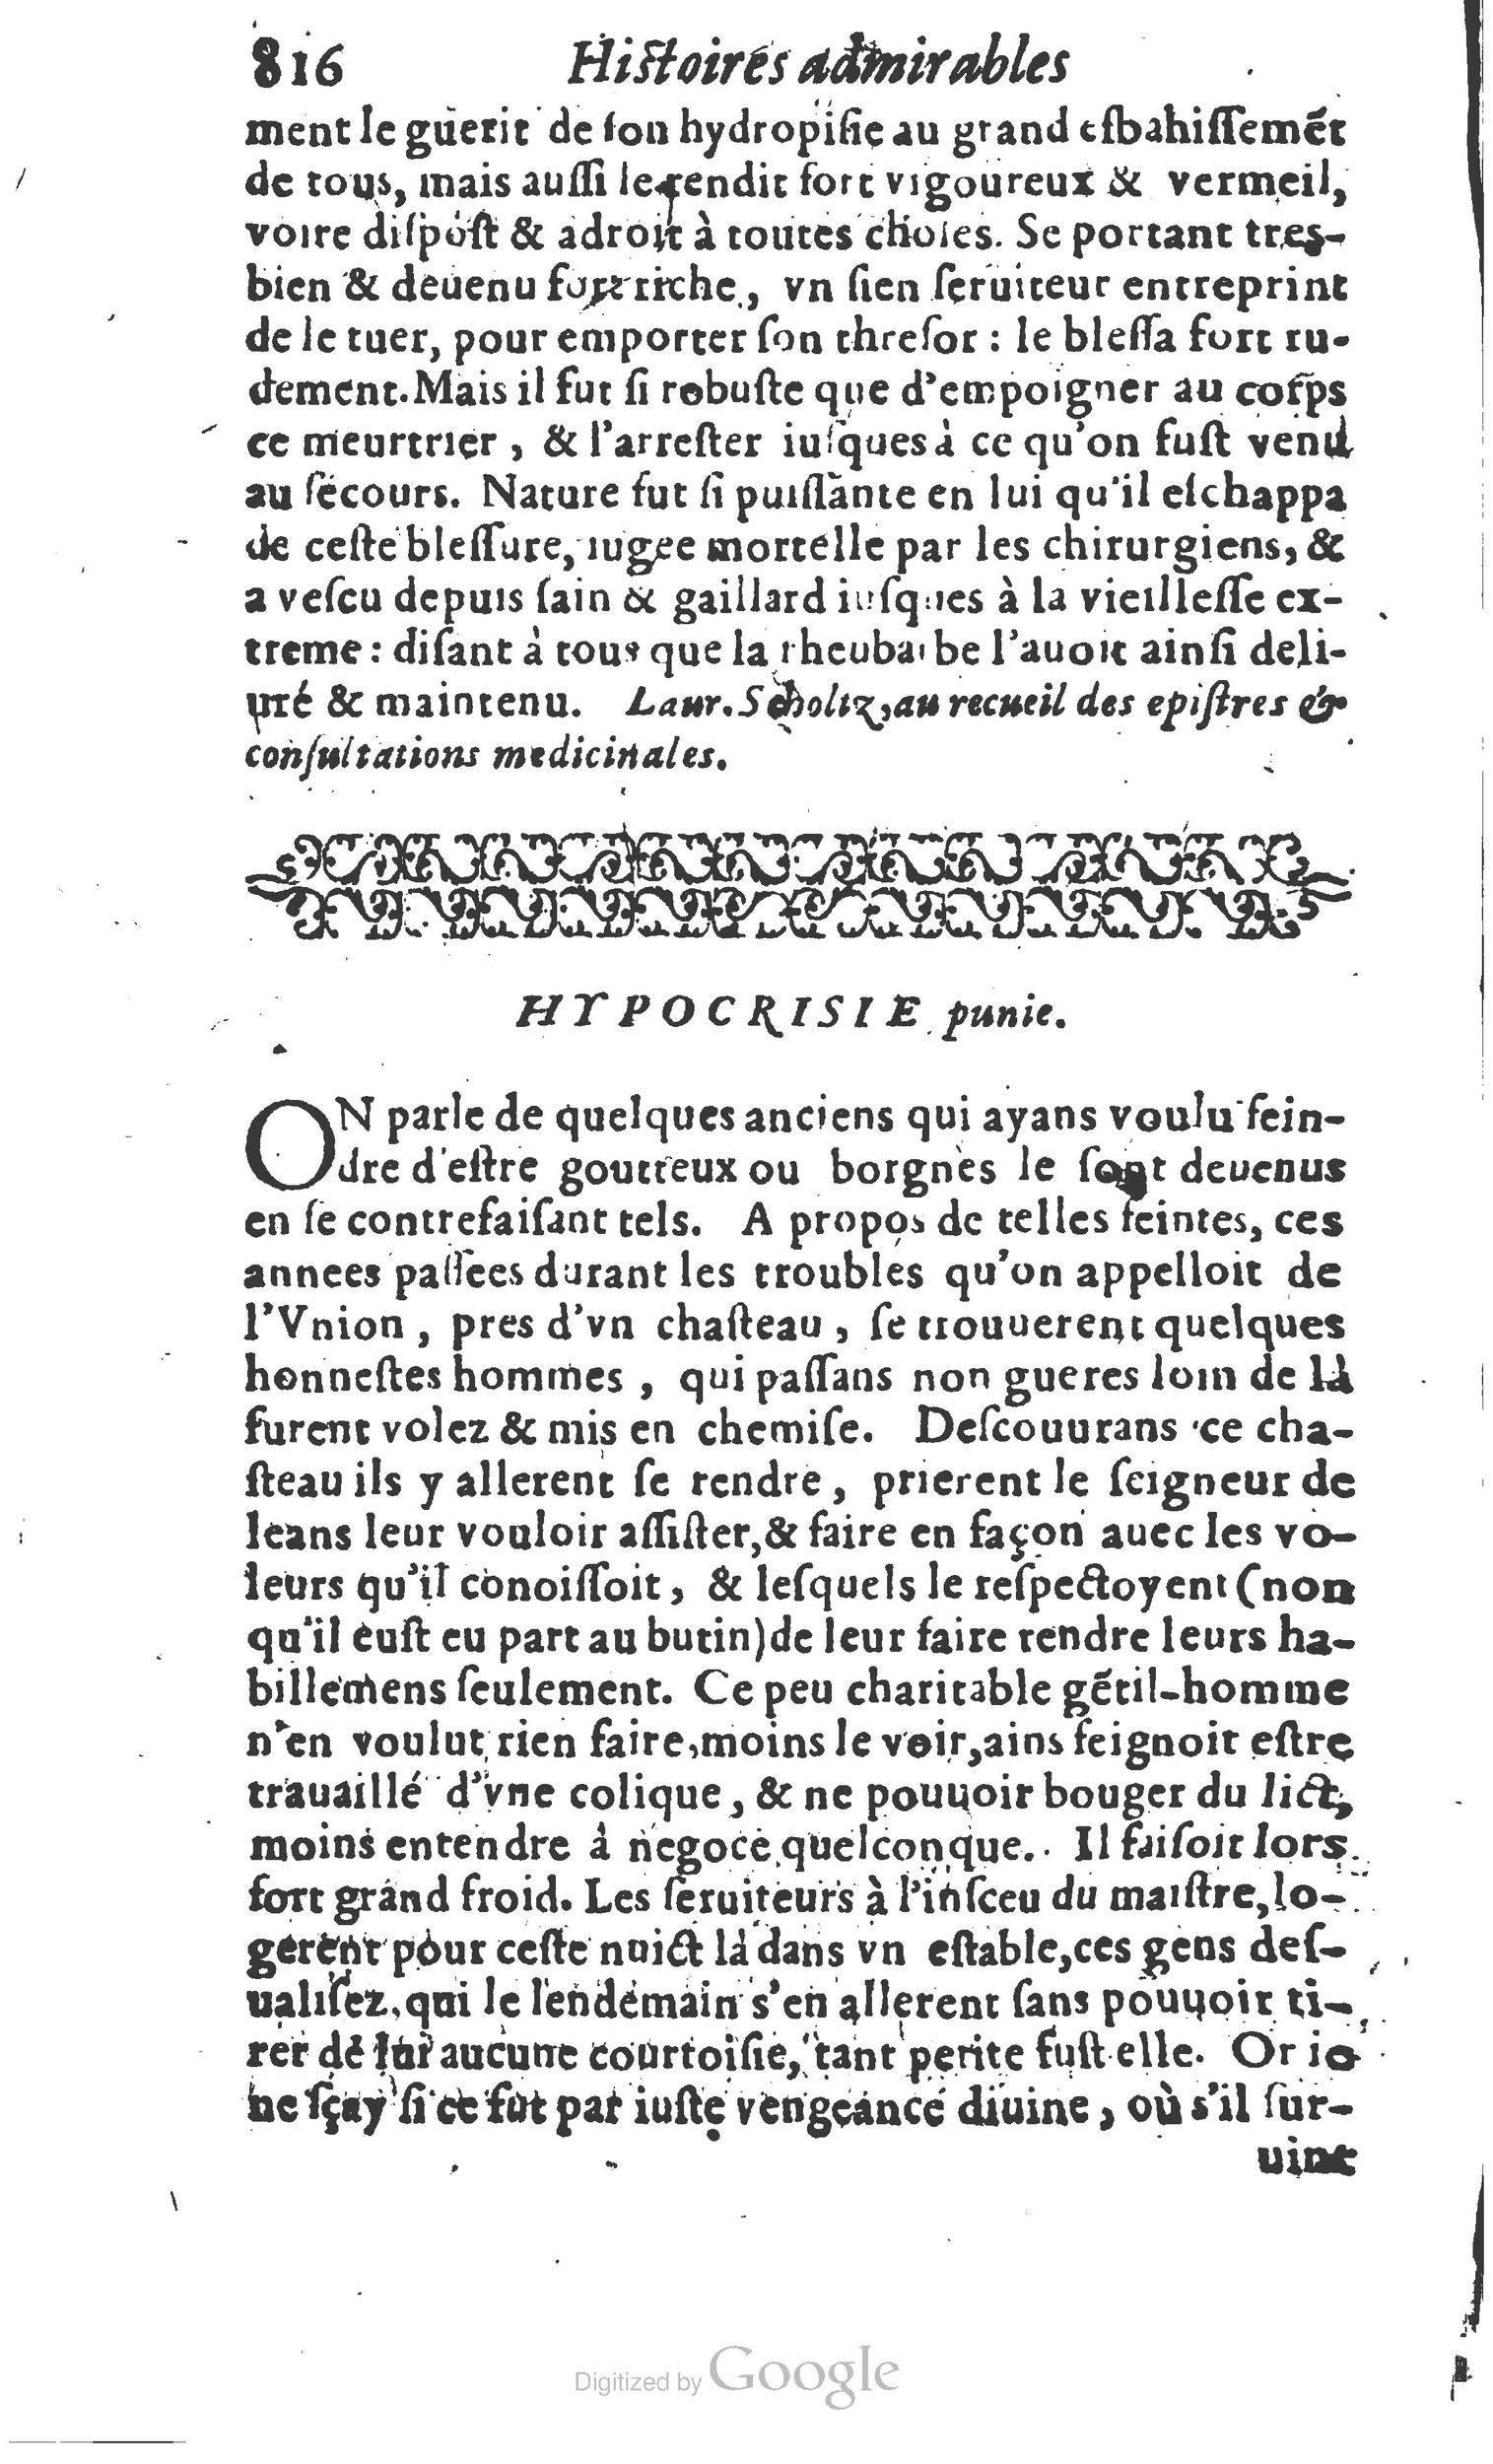 1610 Trésor d’histoires admirables et mémorables de nostre temps Marceau Princeton_Page_0837.jpg